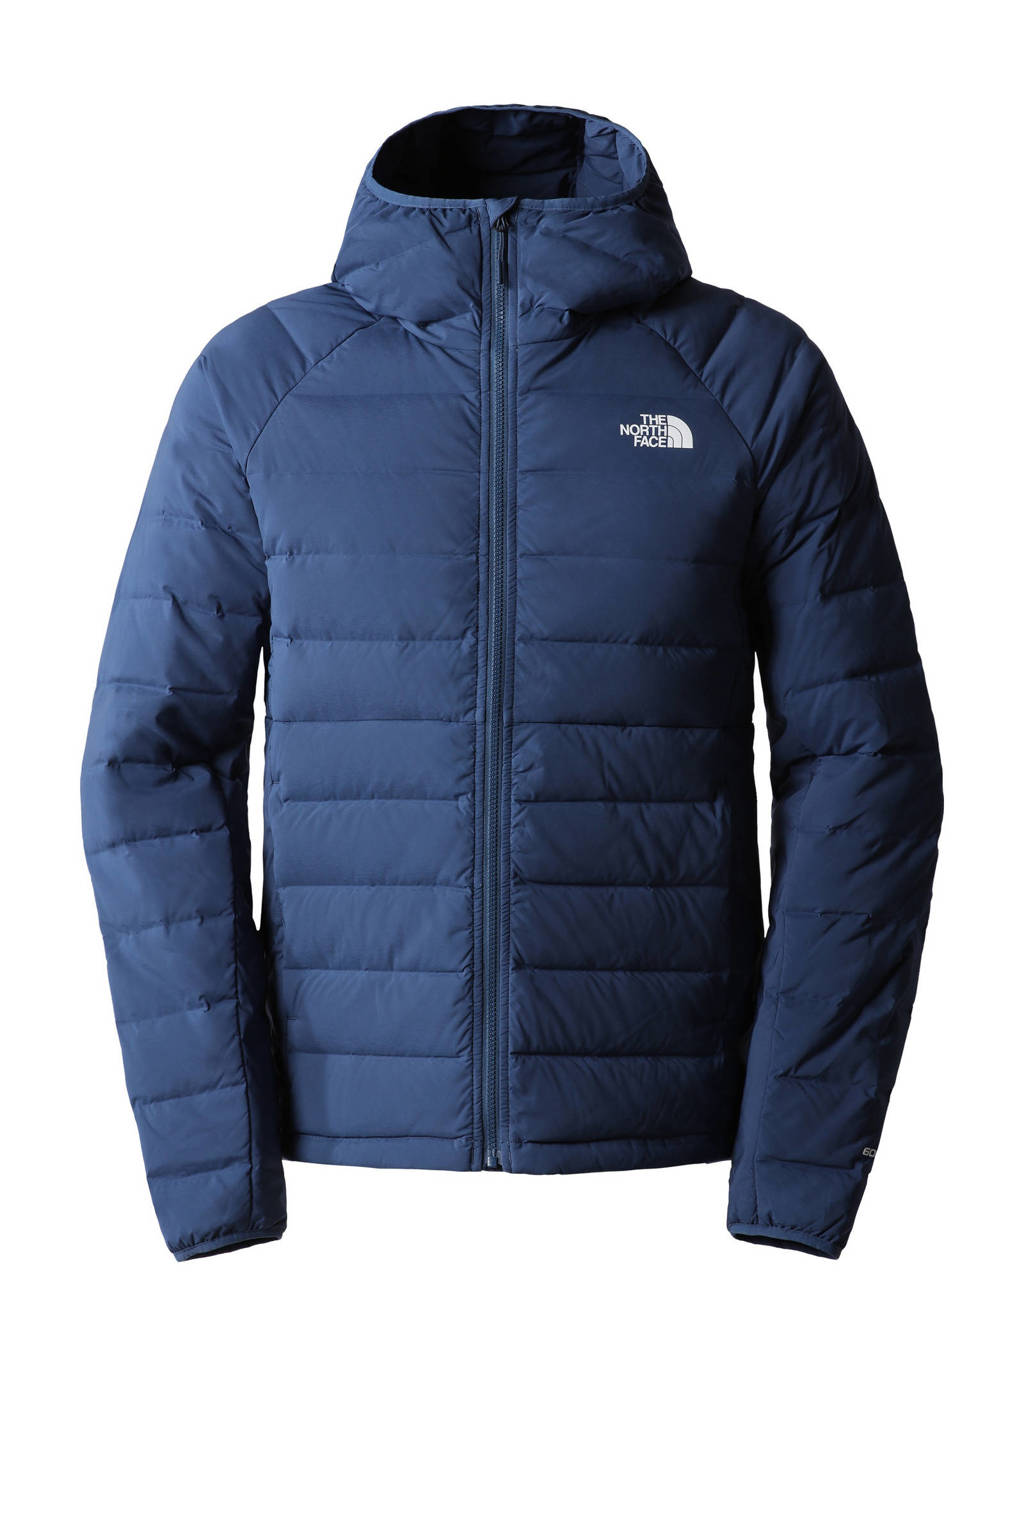 geïrriteerd raken schuifelen zege The North Face outdoor jas donkerblauw | wehkamp